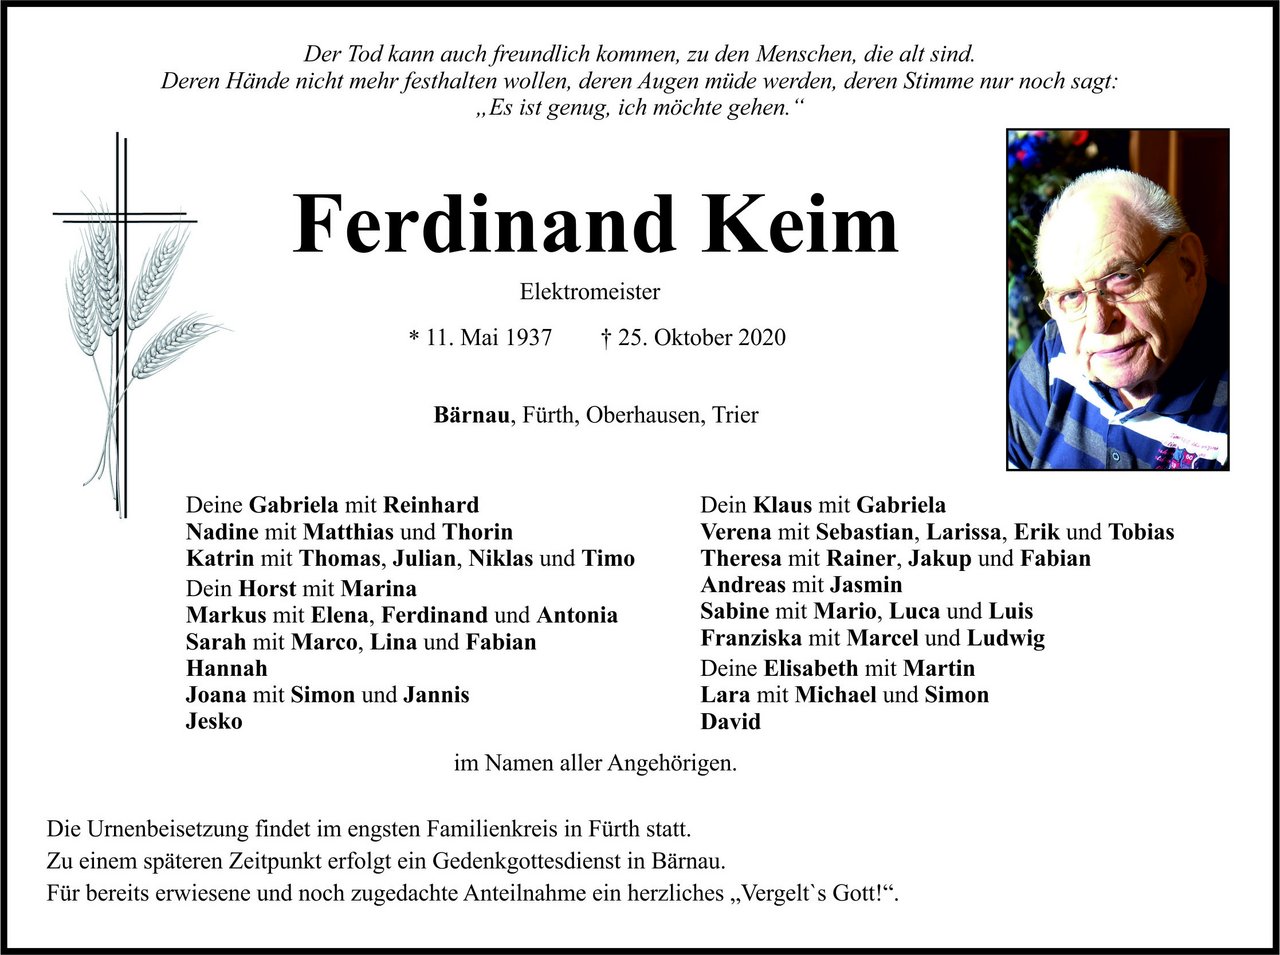 Traueranzeige Ferdinand Keim, Bärnau